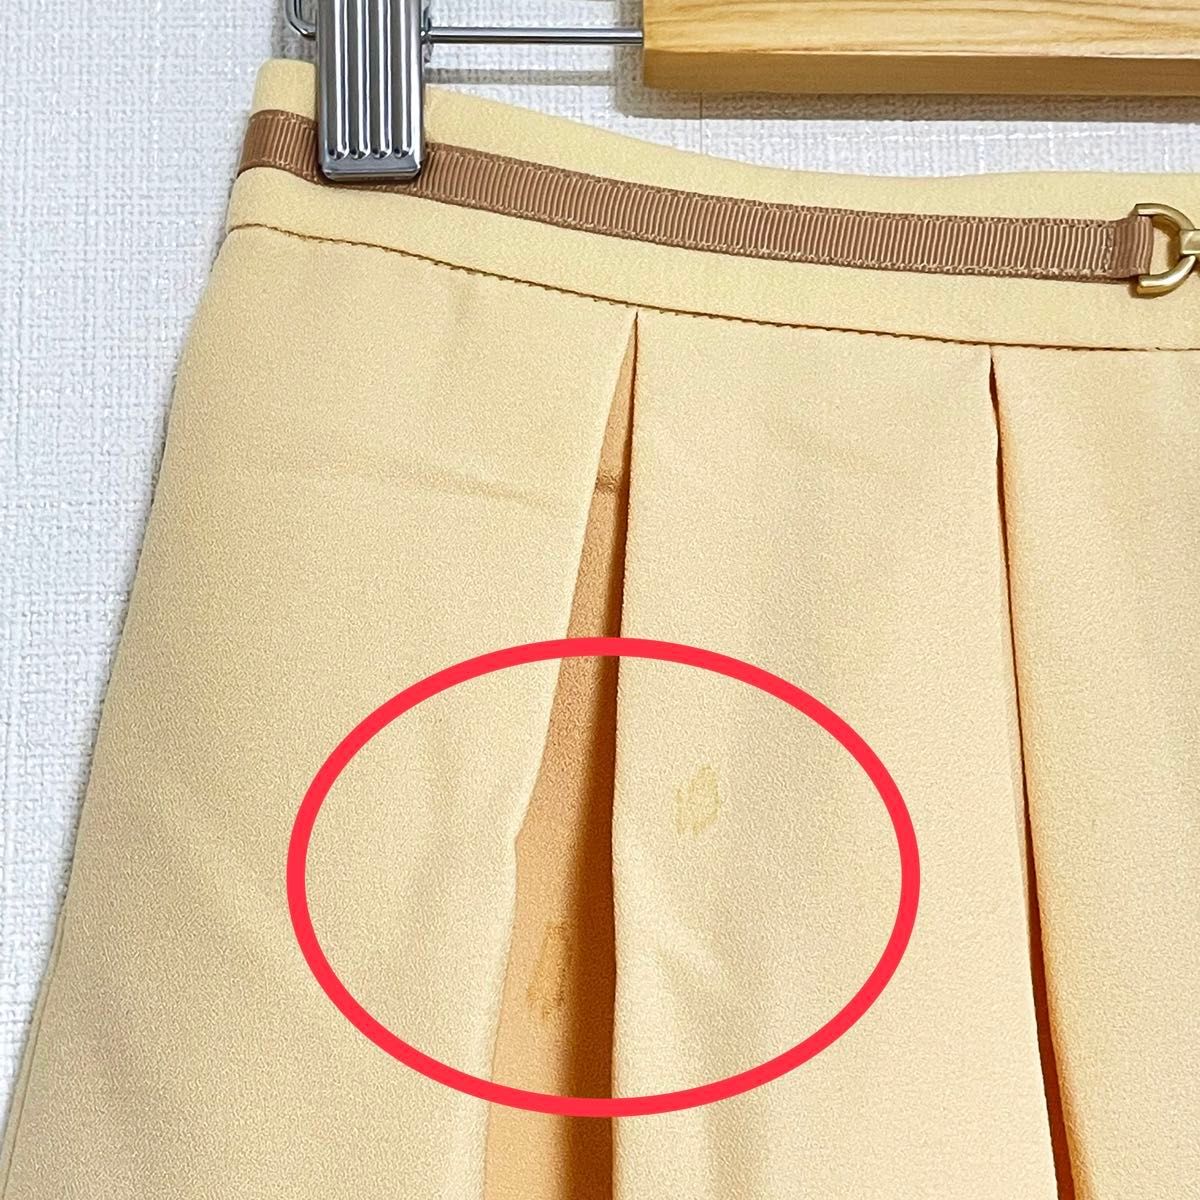 ロペピクニック プリーツミニスカート 韓国ファッション風 サイズ36  S位 スカート プリーツスカート プリーツ 春コーデ